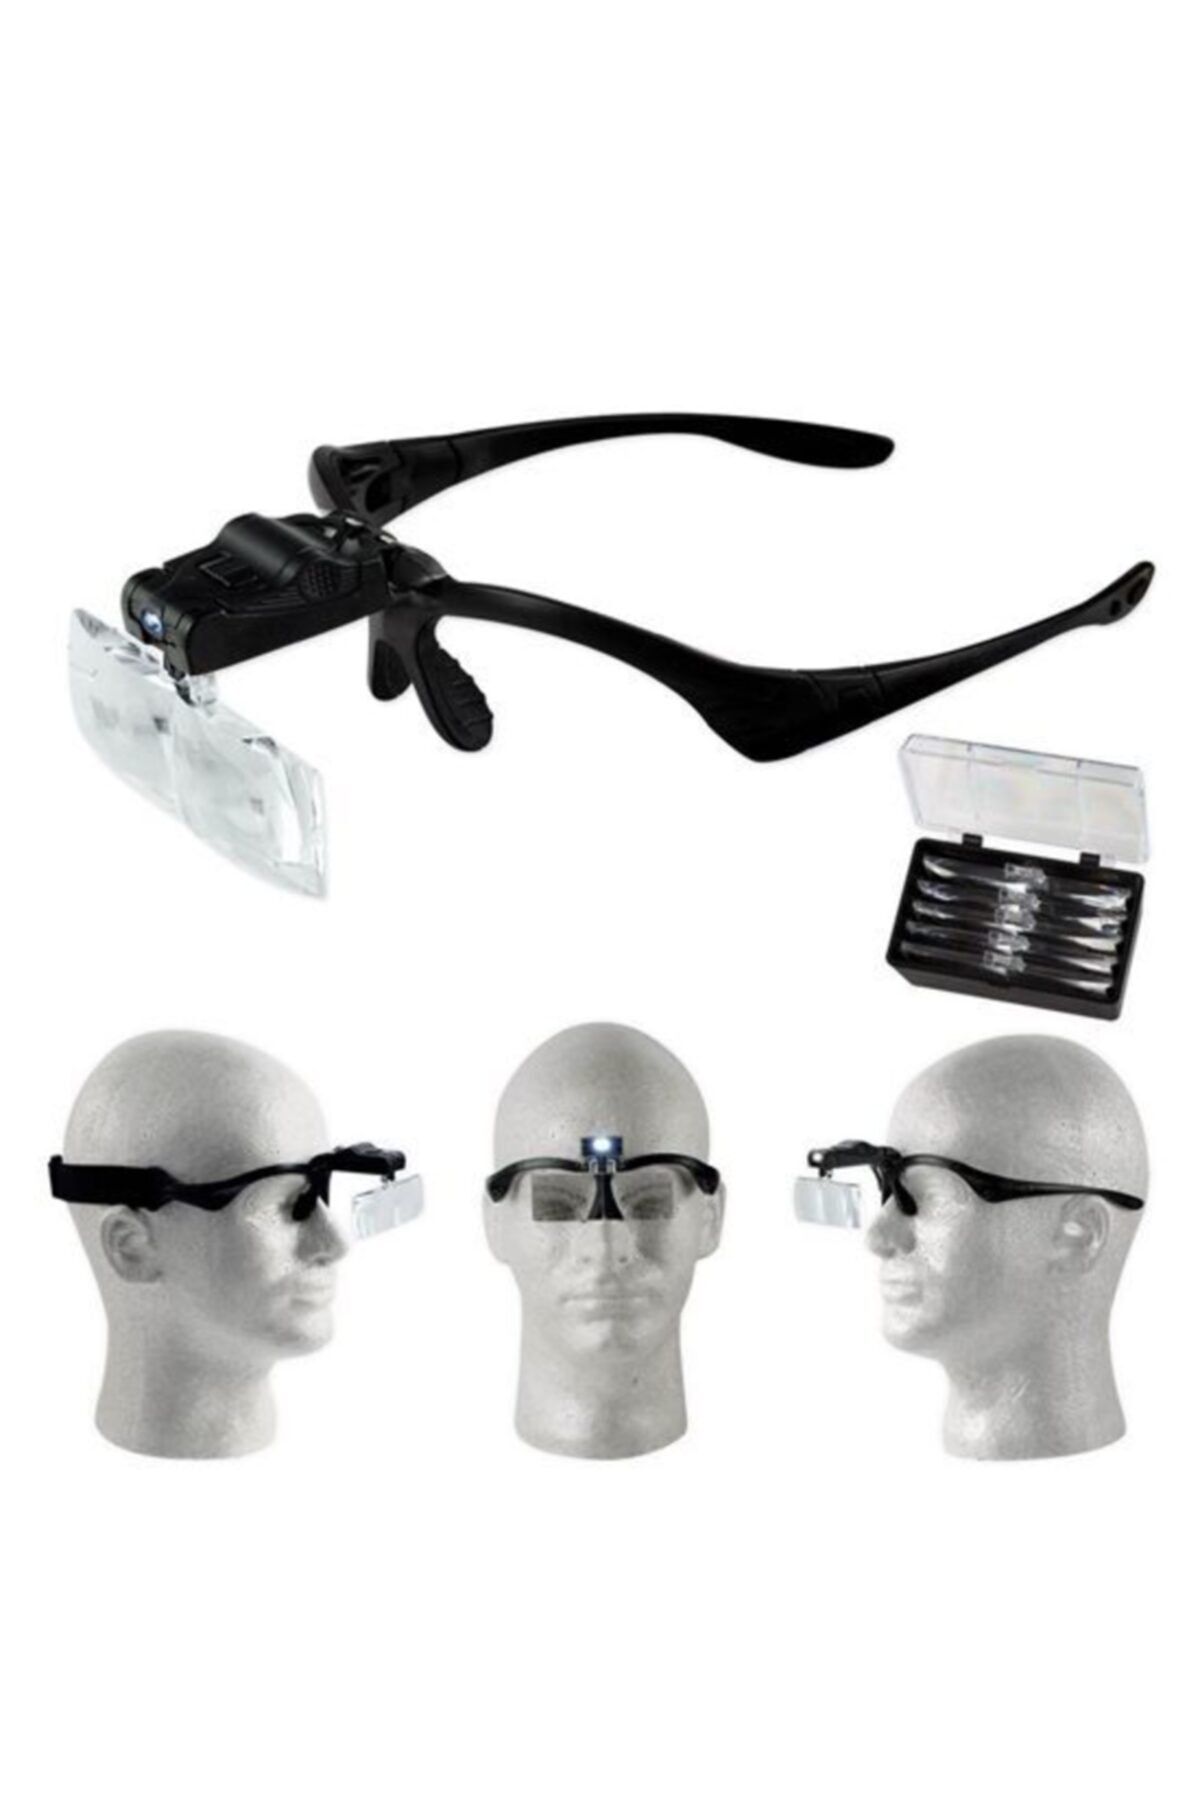 Увеличительные очки лупа. Led Rechargeable spectacle Magnifier model 751635 лупа очки. Увеличительные очки-лупа LPO-01. Бинокулярные очки Magnifier head Glass MP-23. Увеличительные очки для чтения 1g10-03 a0241.